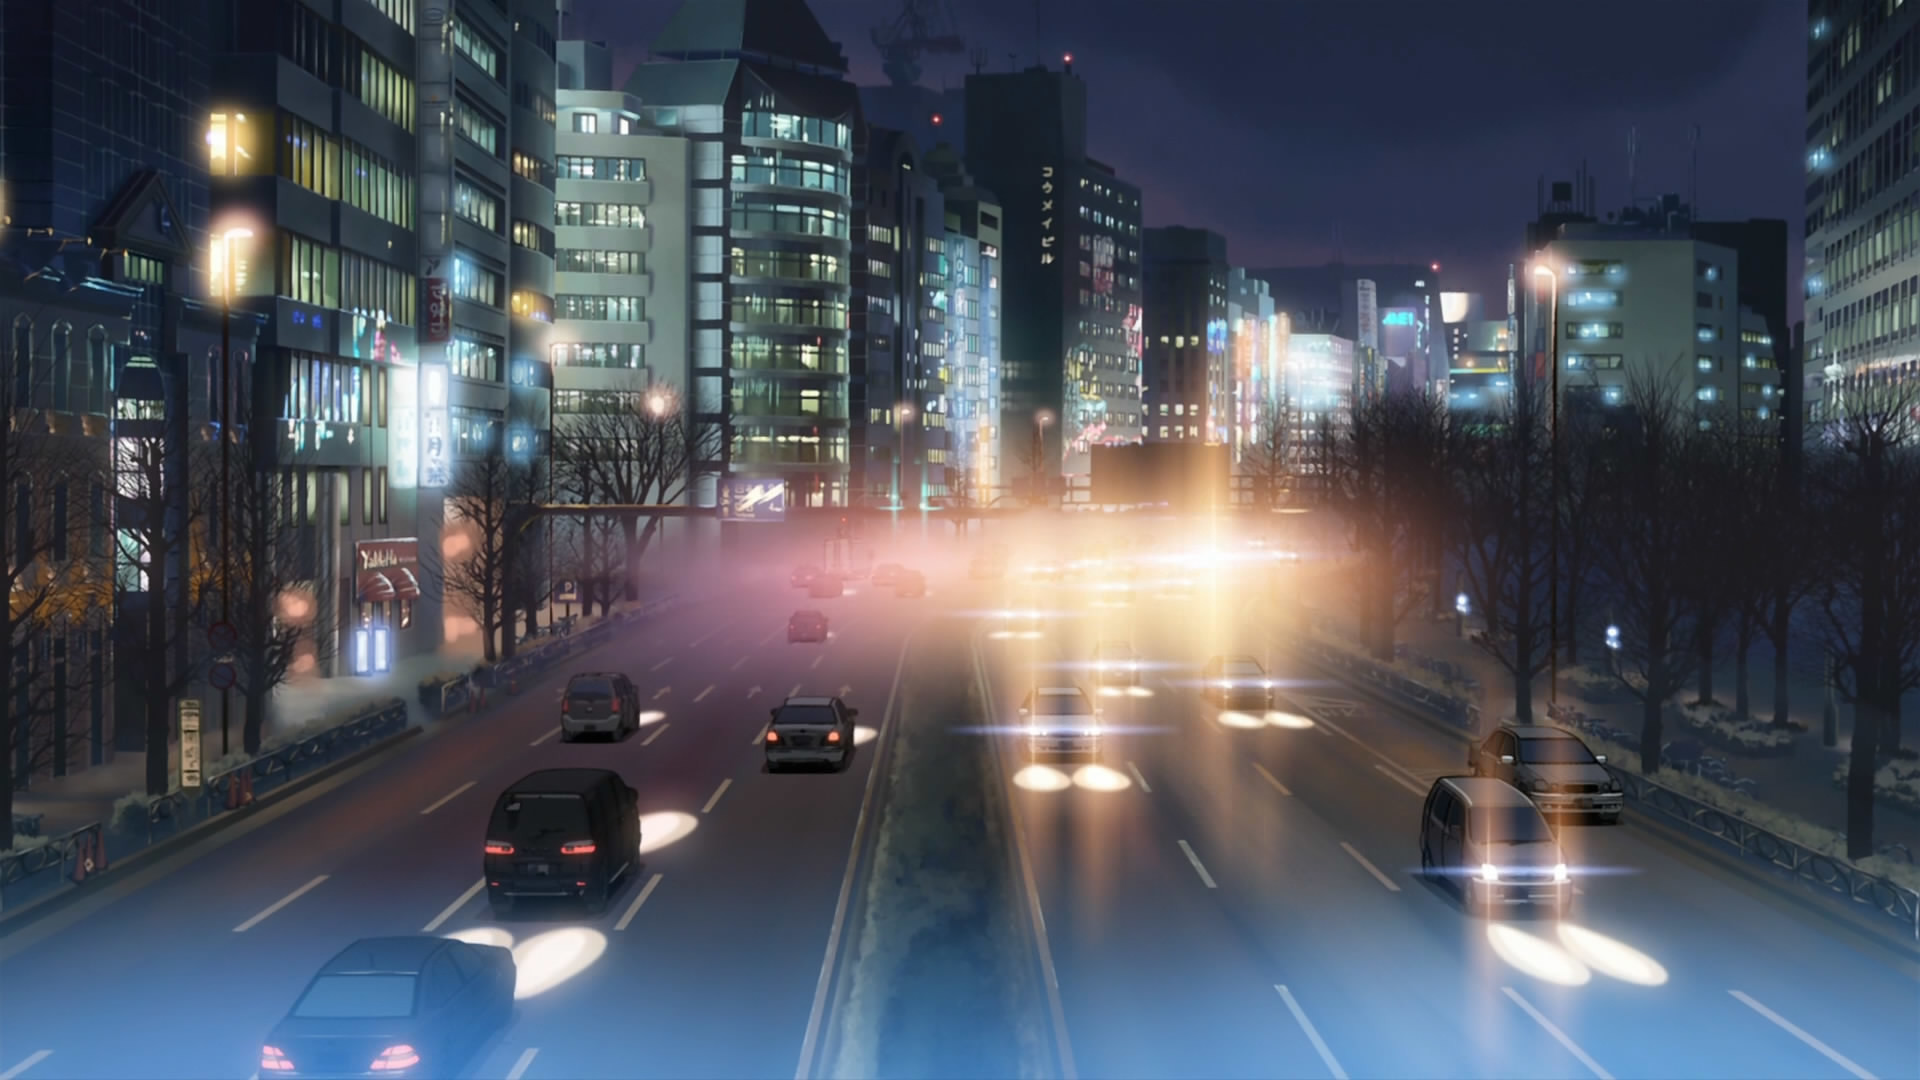 fond d'écran makoto shinkai,zone métropolitaine,zone urbaine,ville,nuit,paysage urbain